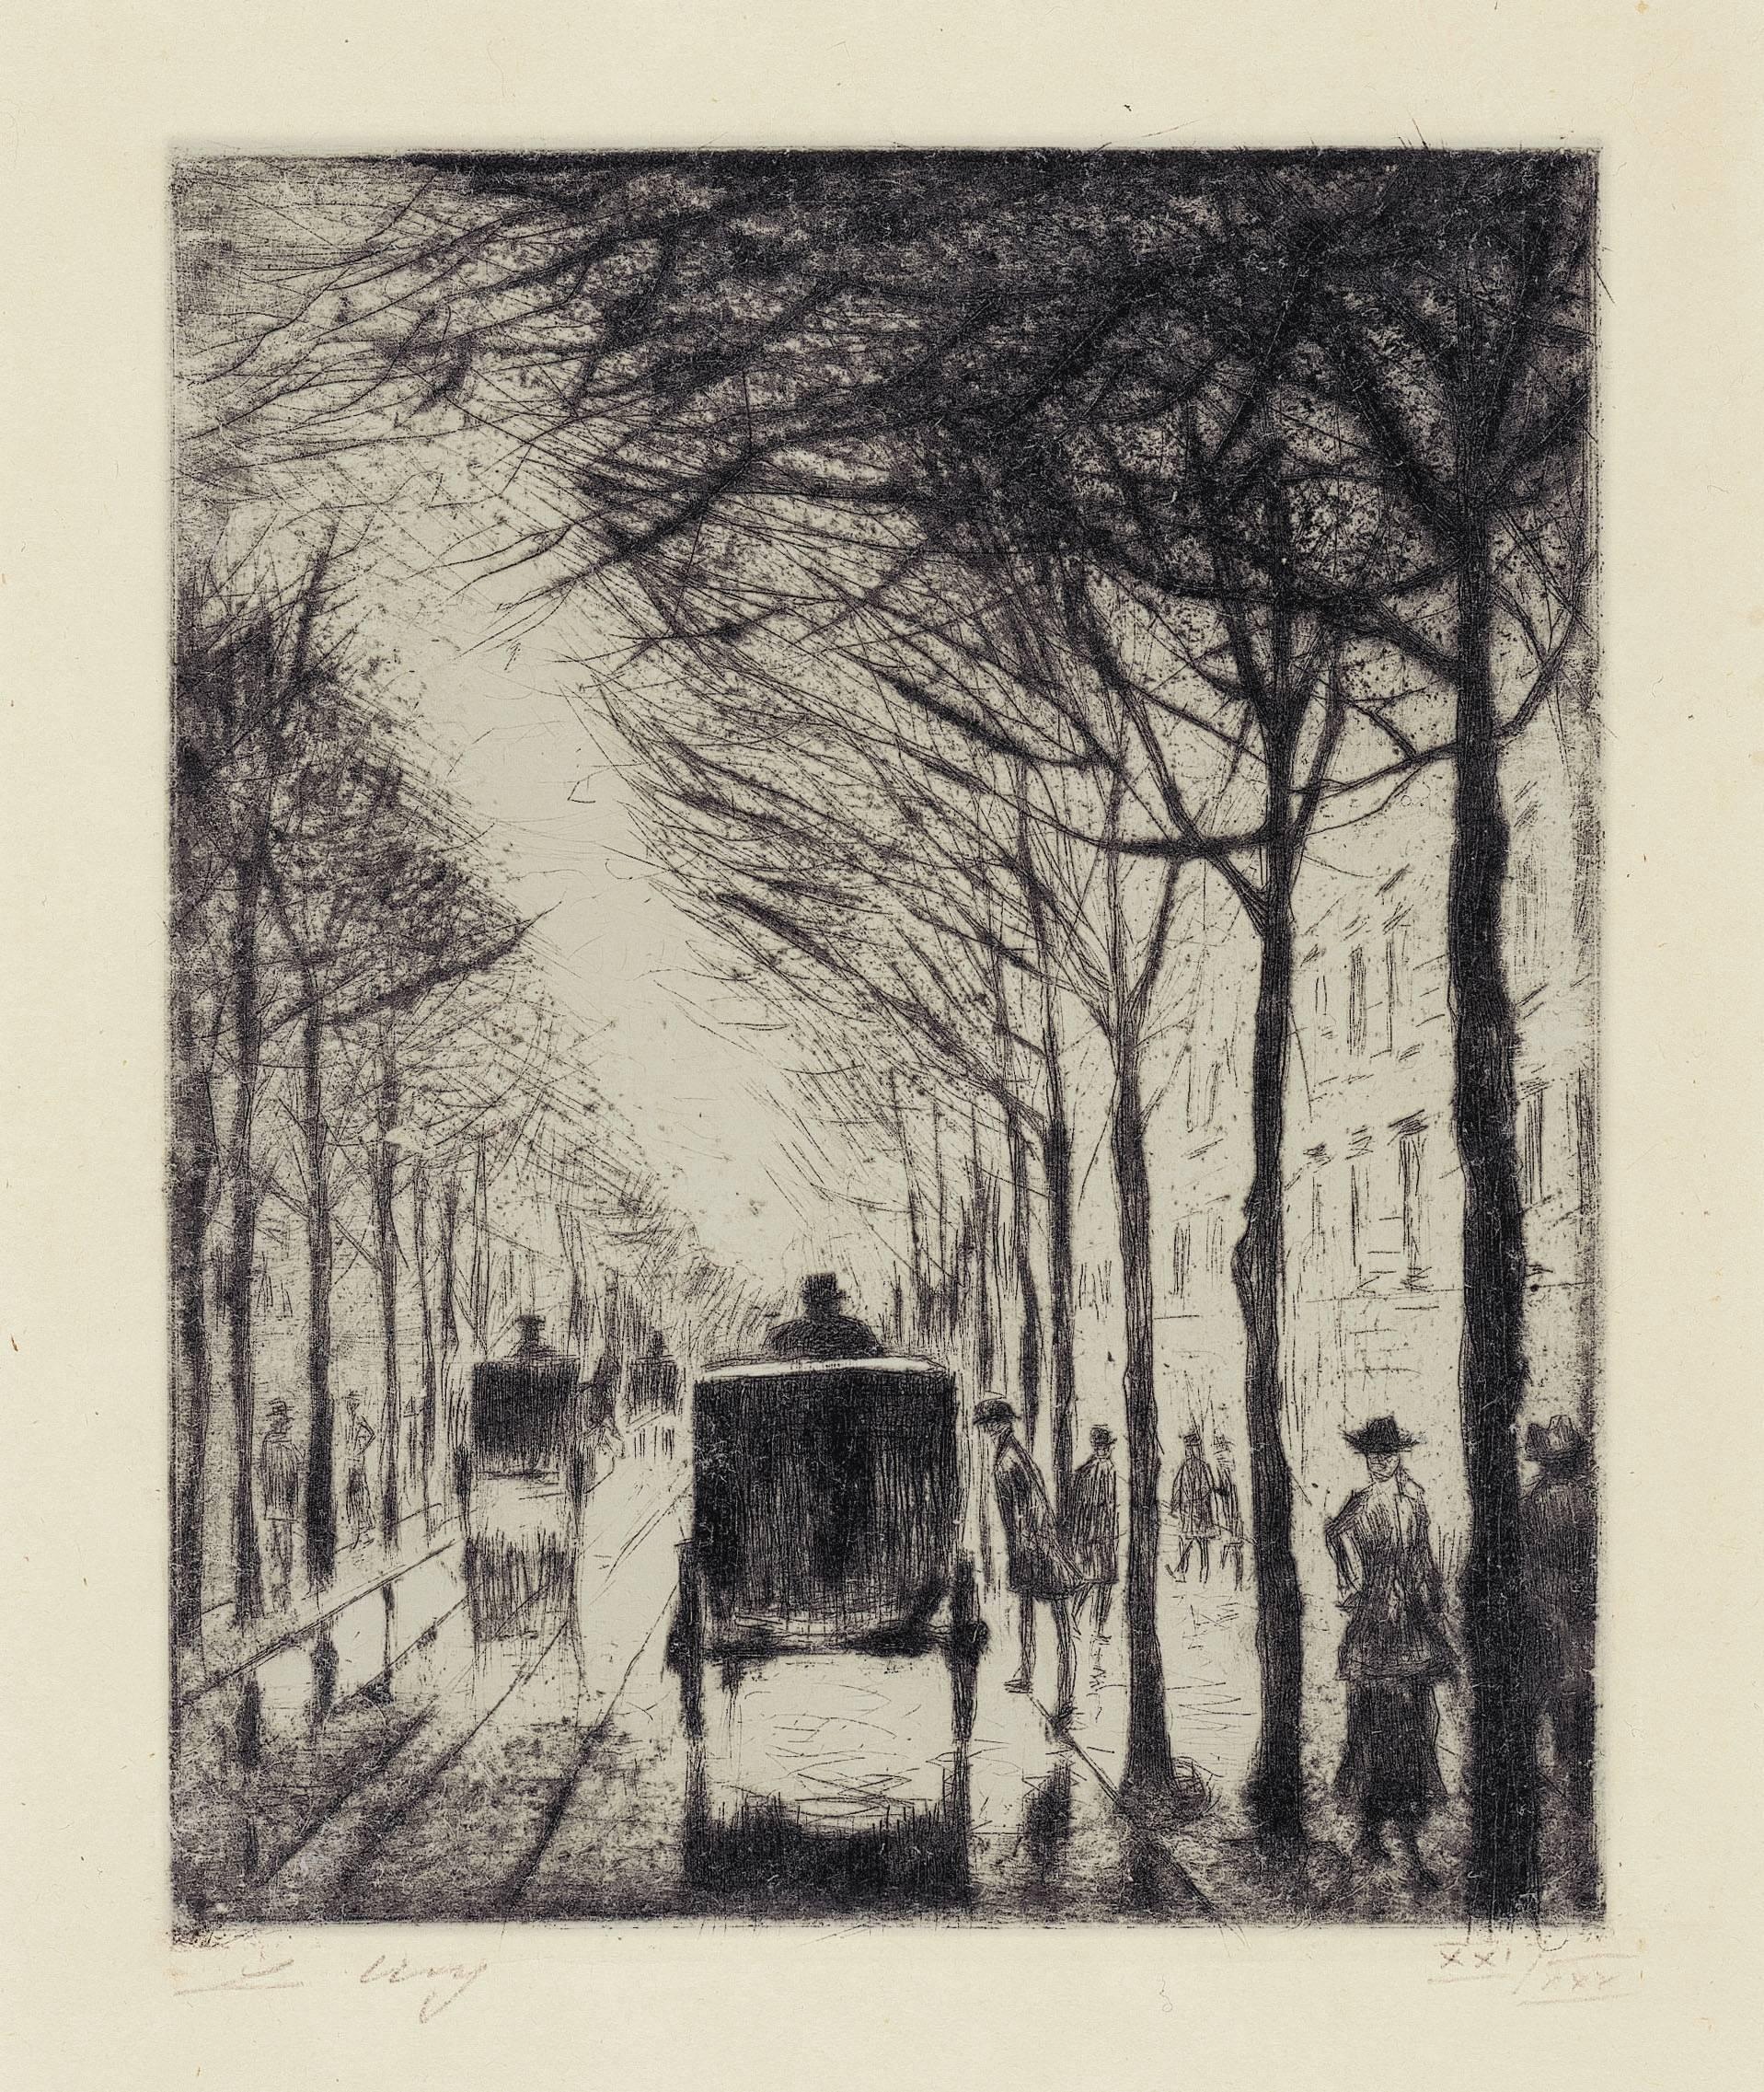 »Straßenbild Klein Bellevuestraße« - Print by Lesser Ury